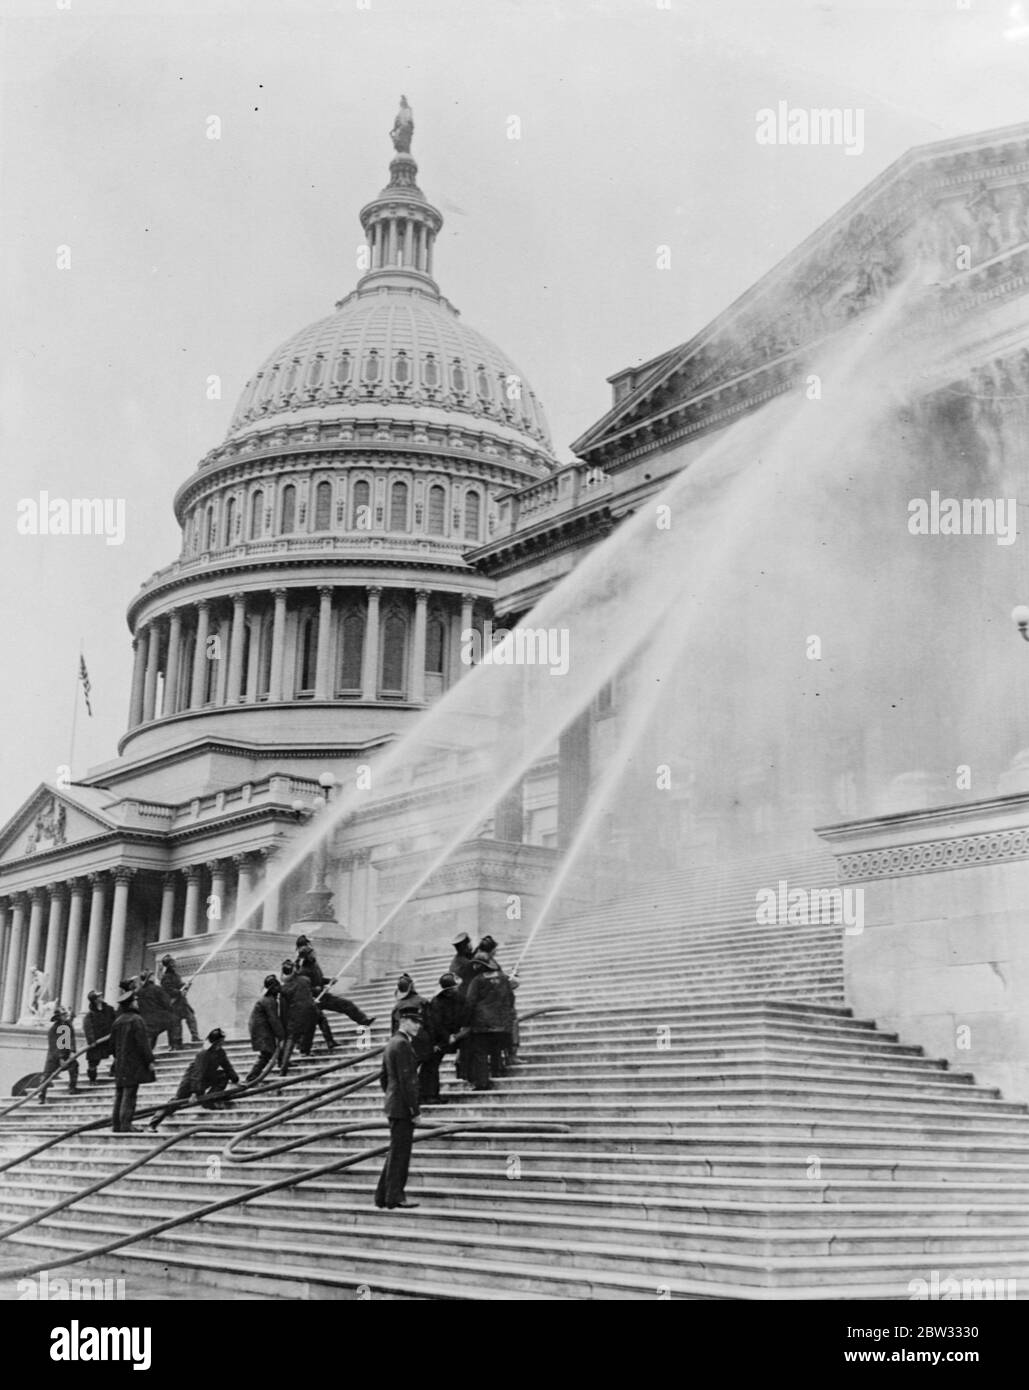 Das Capitol bekommt sein jährliches Bad. Das berühmte Capitol Gebäude in Washington, DC erhielt sein jährliches Bad von den Feuerwehrleuten der Stadt. Feuerwehrleute, die mächtige Wasserströme aus ihren Schläuchen auf das Kapitolgebäude lenken, während sie ihm sein jährliches Bad geben. November 1932 Stockfoto